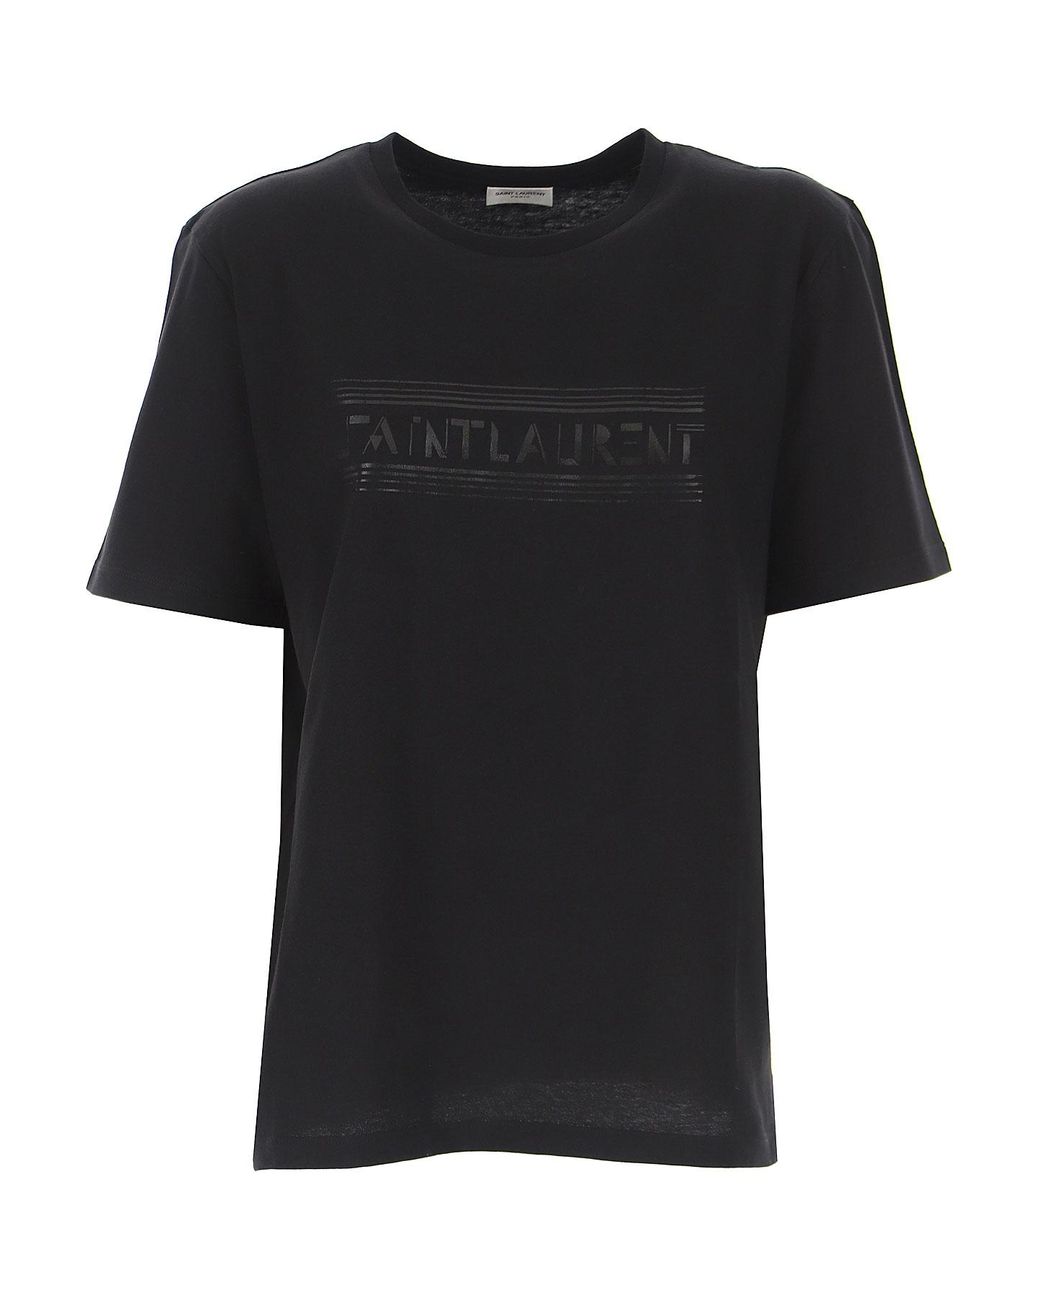 Saint Laurent Cotton T-shirt For Women in Black - Lyst